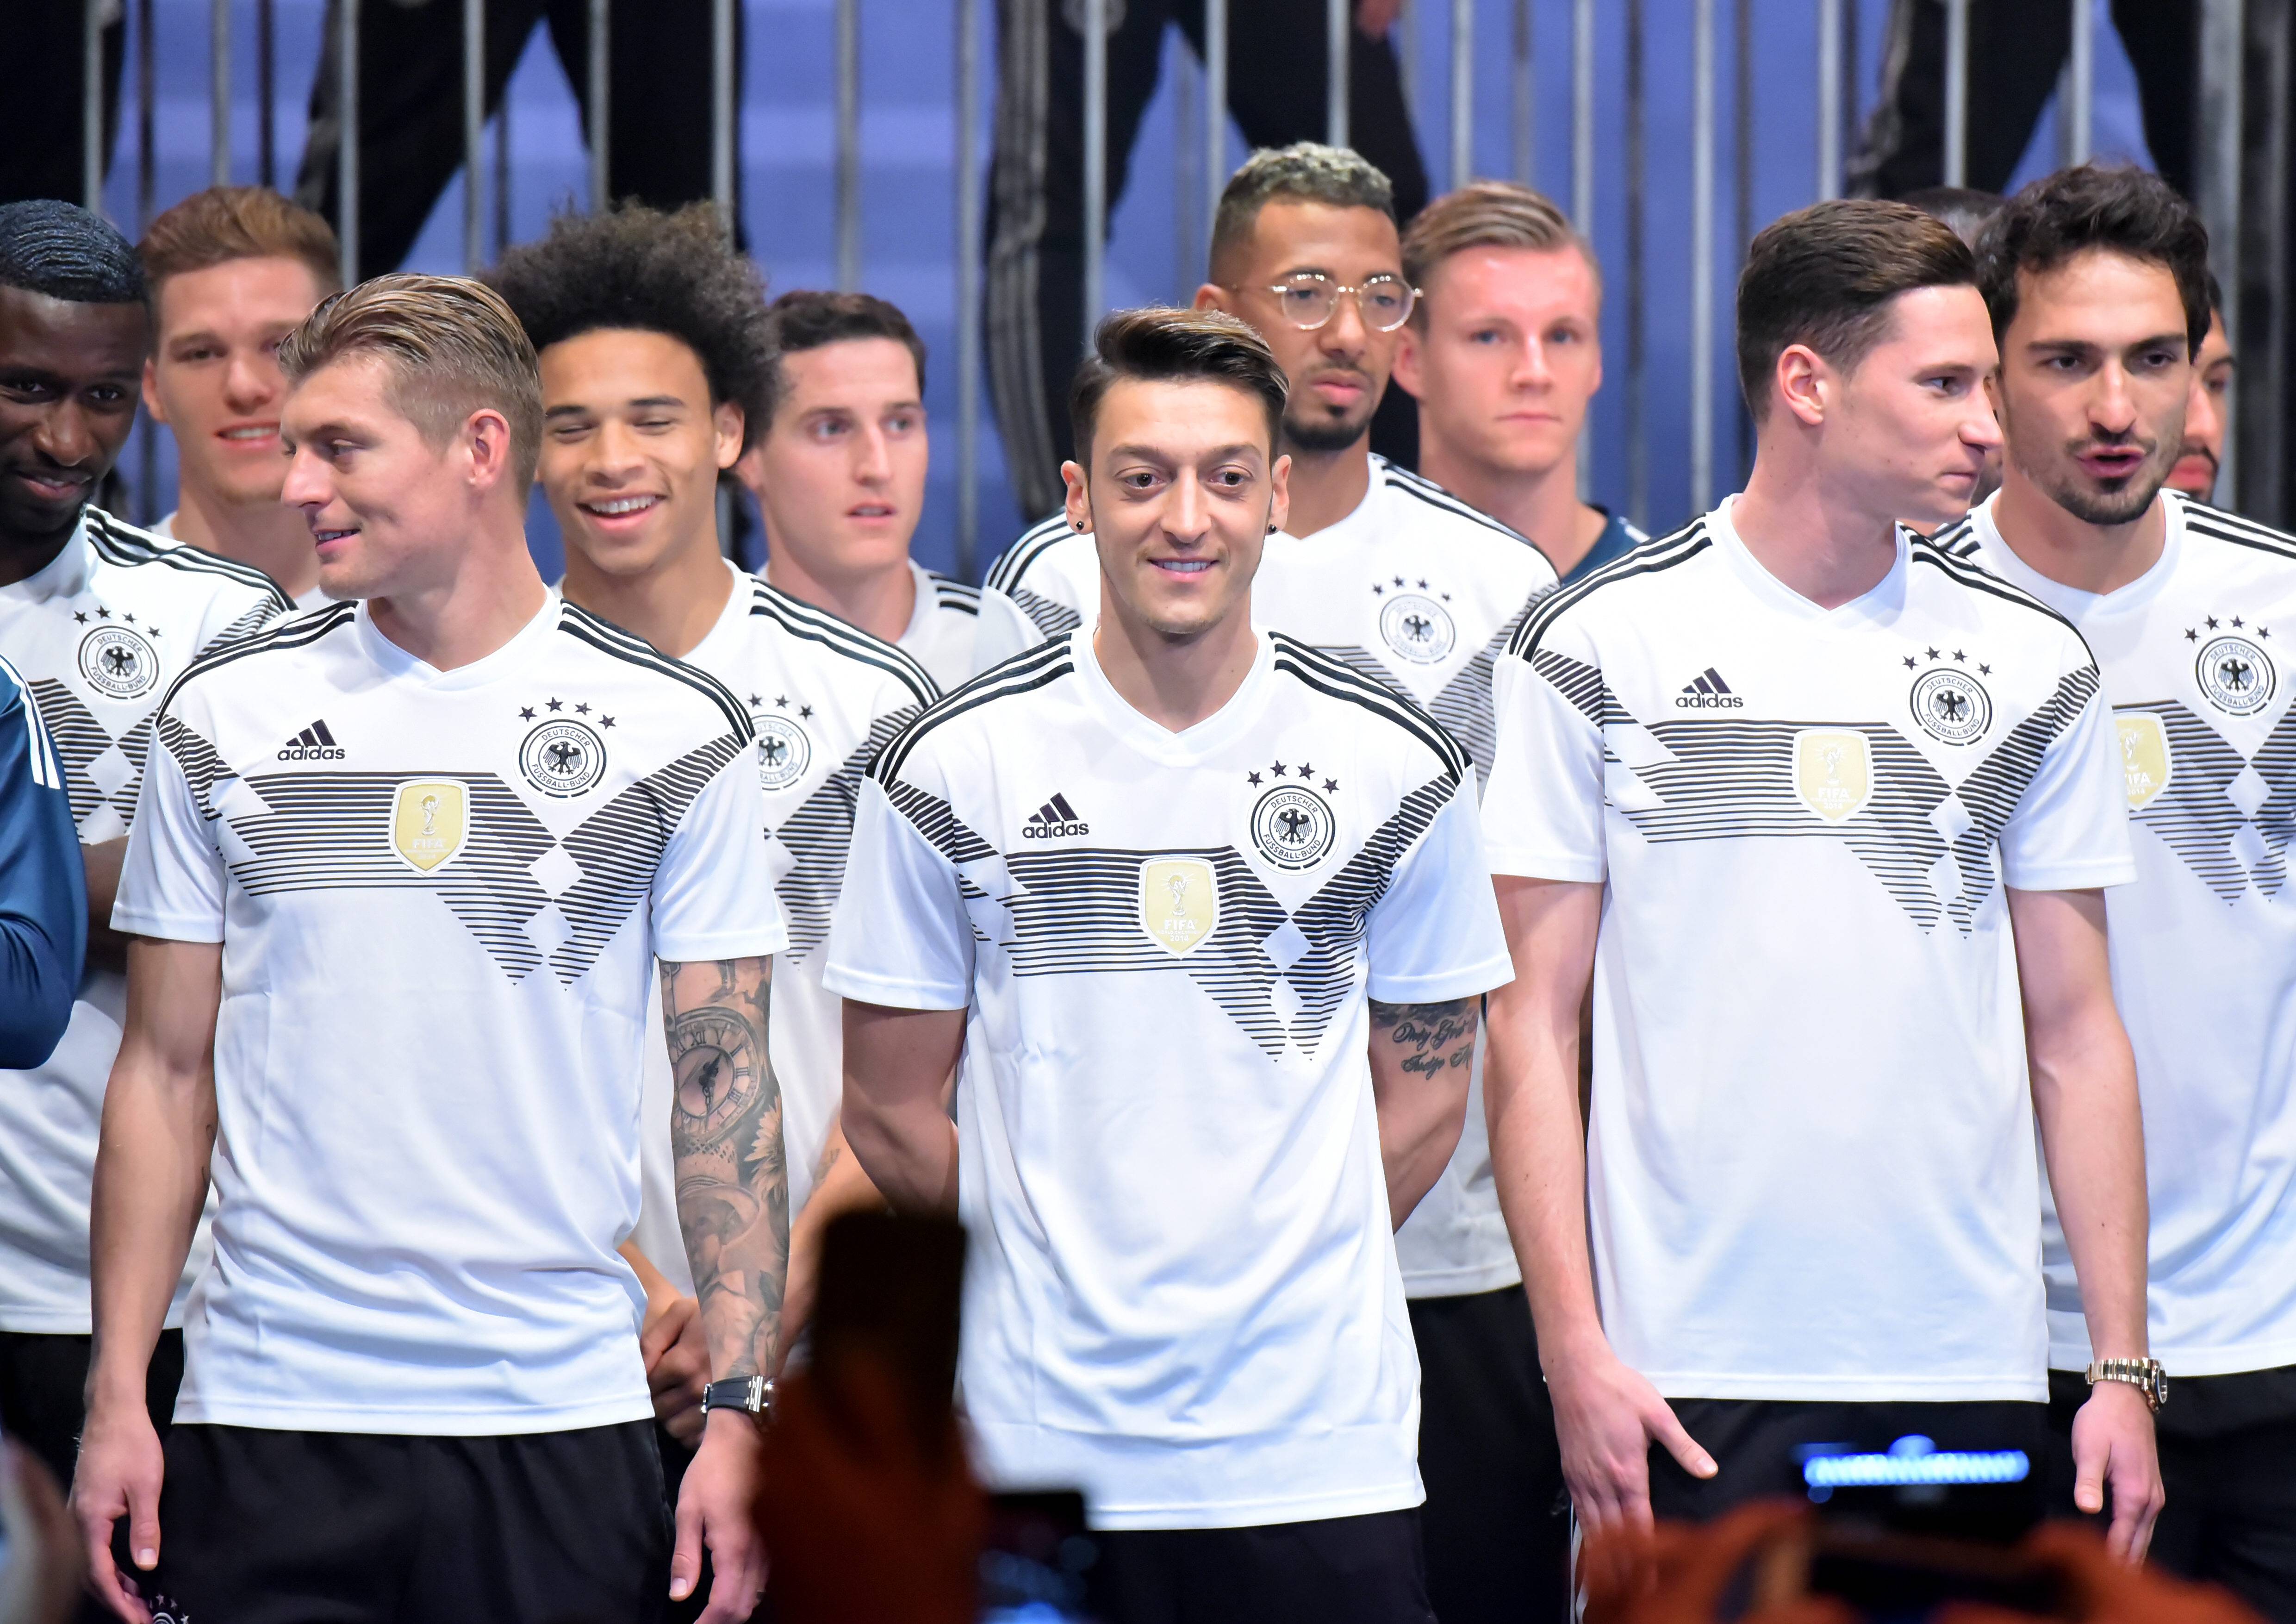 Fussball Wm 2018 Das Millionengeschaft Mit Dem Deutschland Trikot